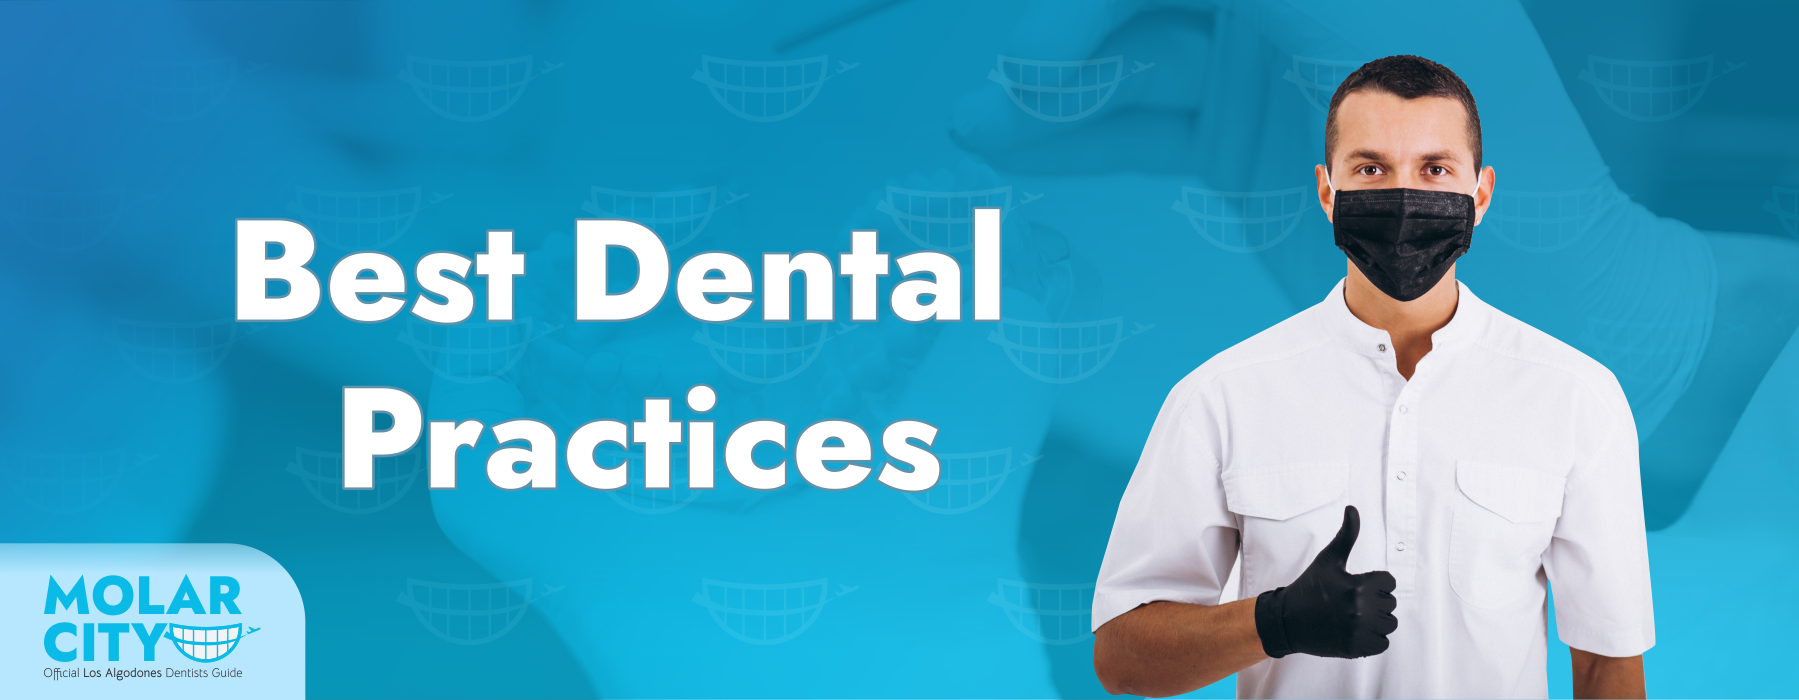 Best Dental Practices for Dental Care